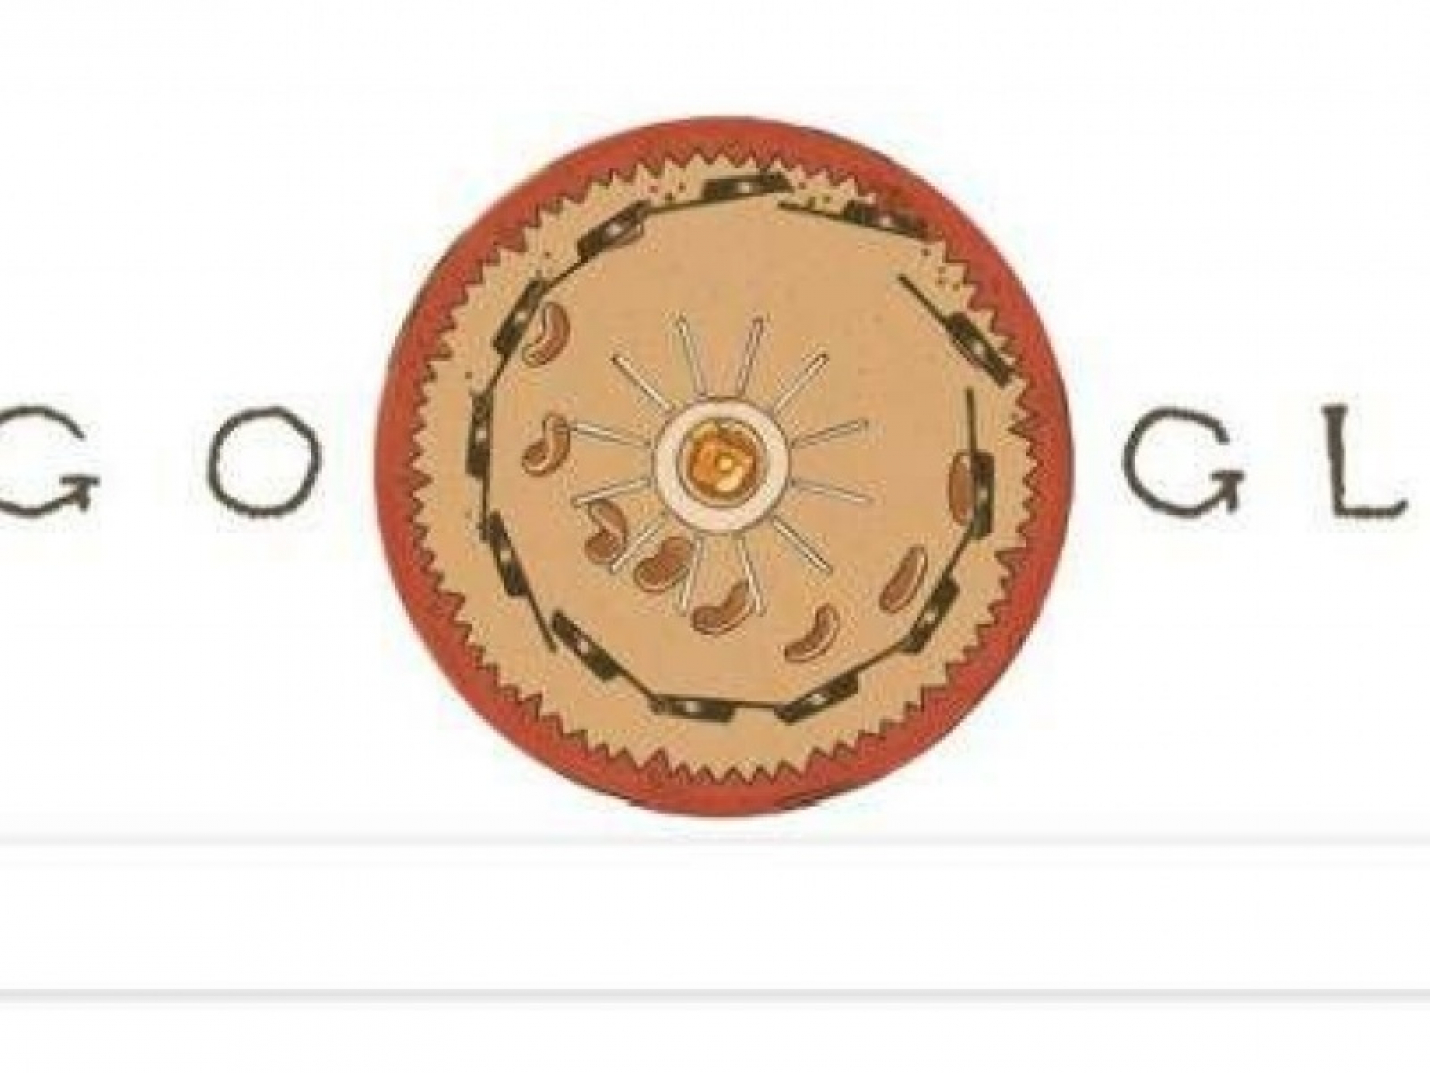 Google выпустил дудл в честь дня рождения Бориса Пастернака